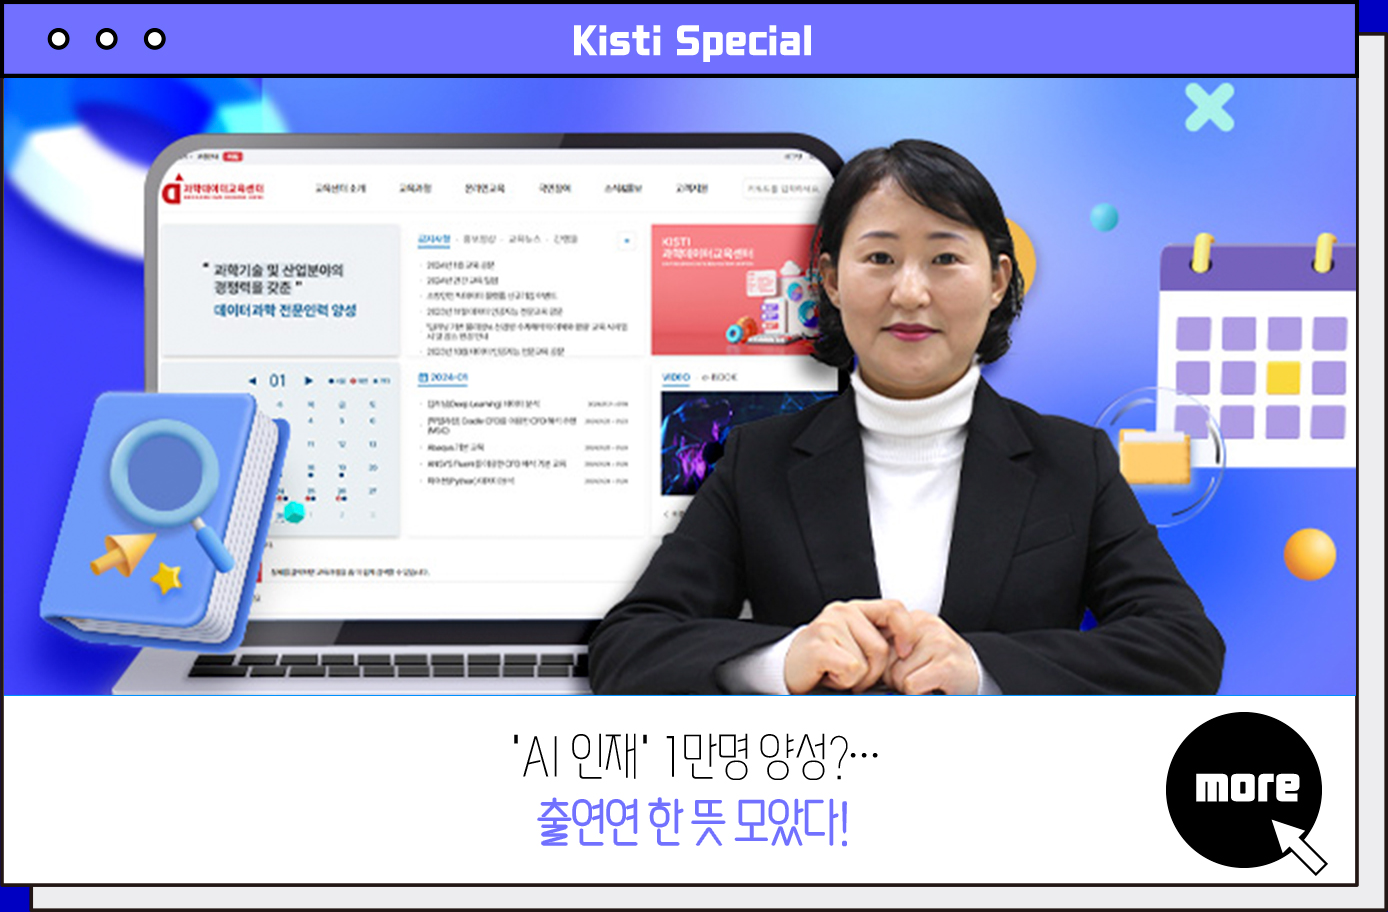 Kisti Special 'AI 인재' 1만명 양성?···출연연 한 뜻 모았다! more